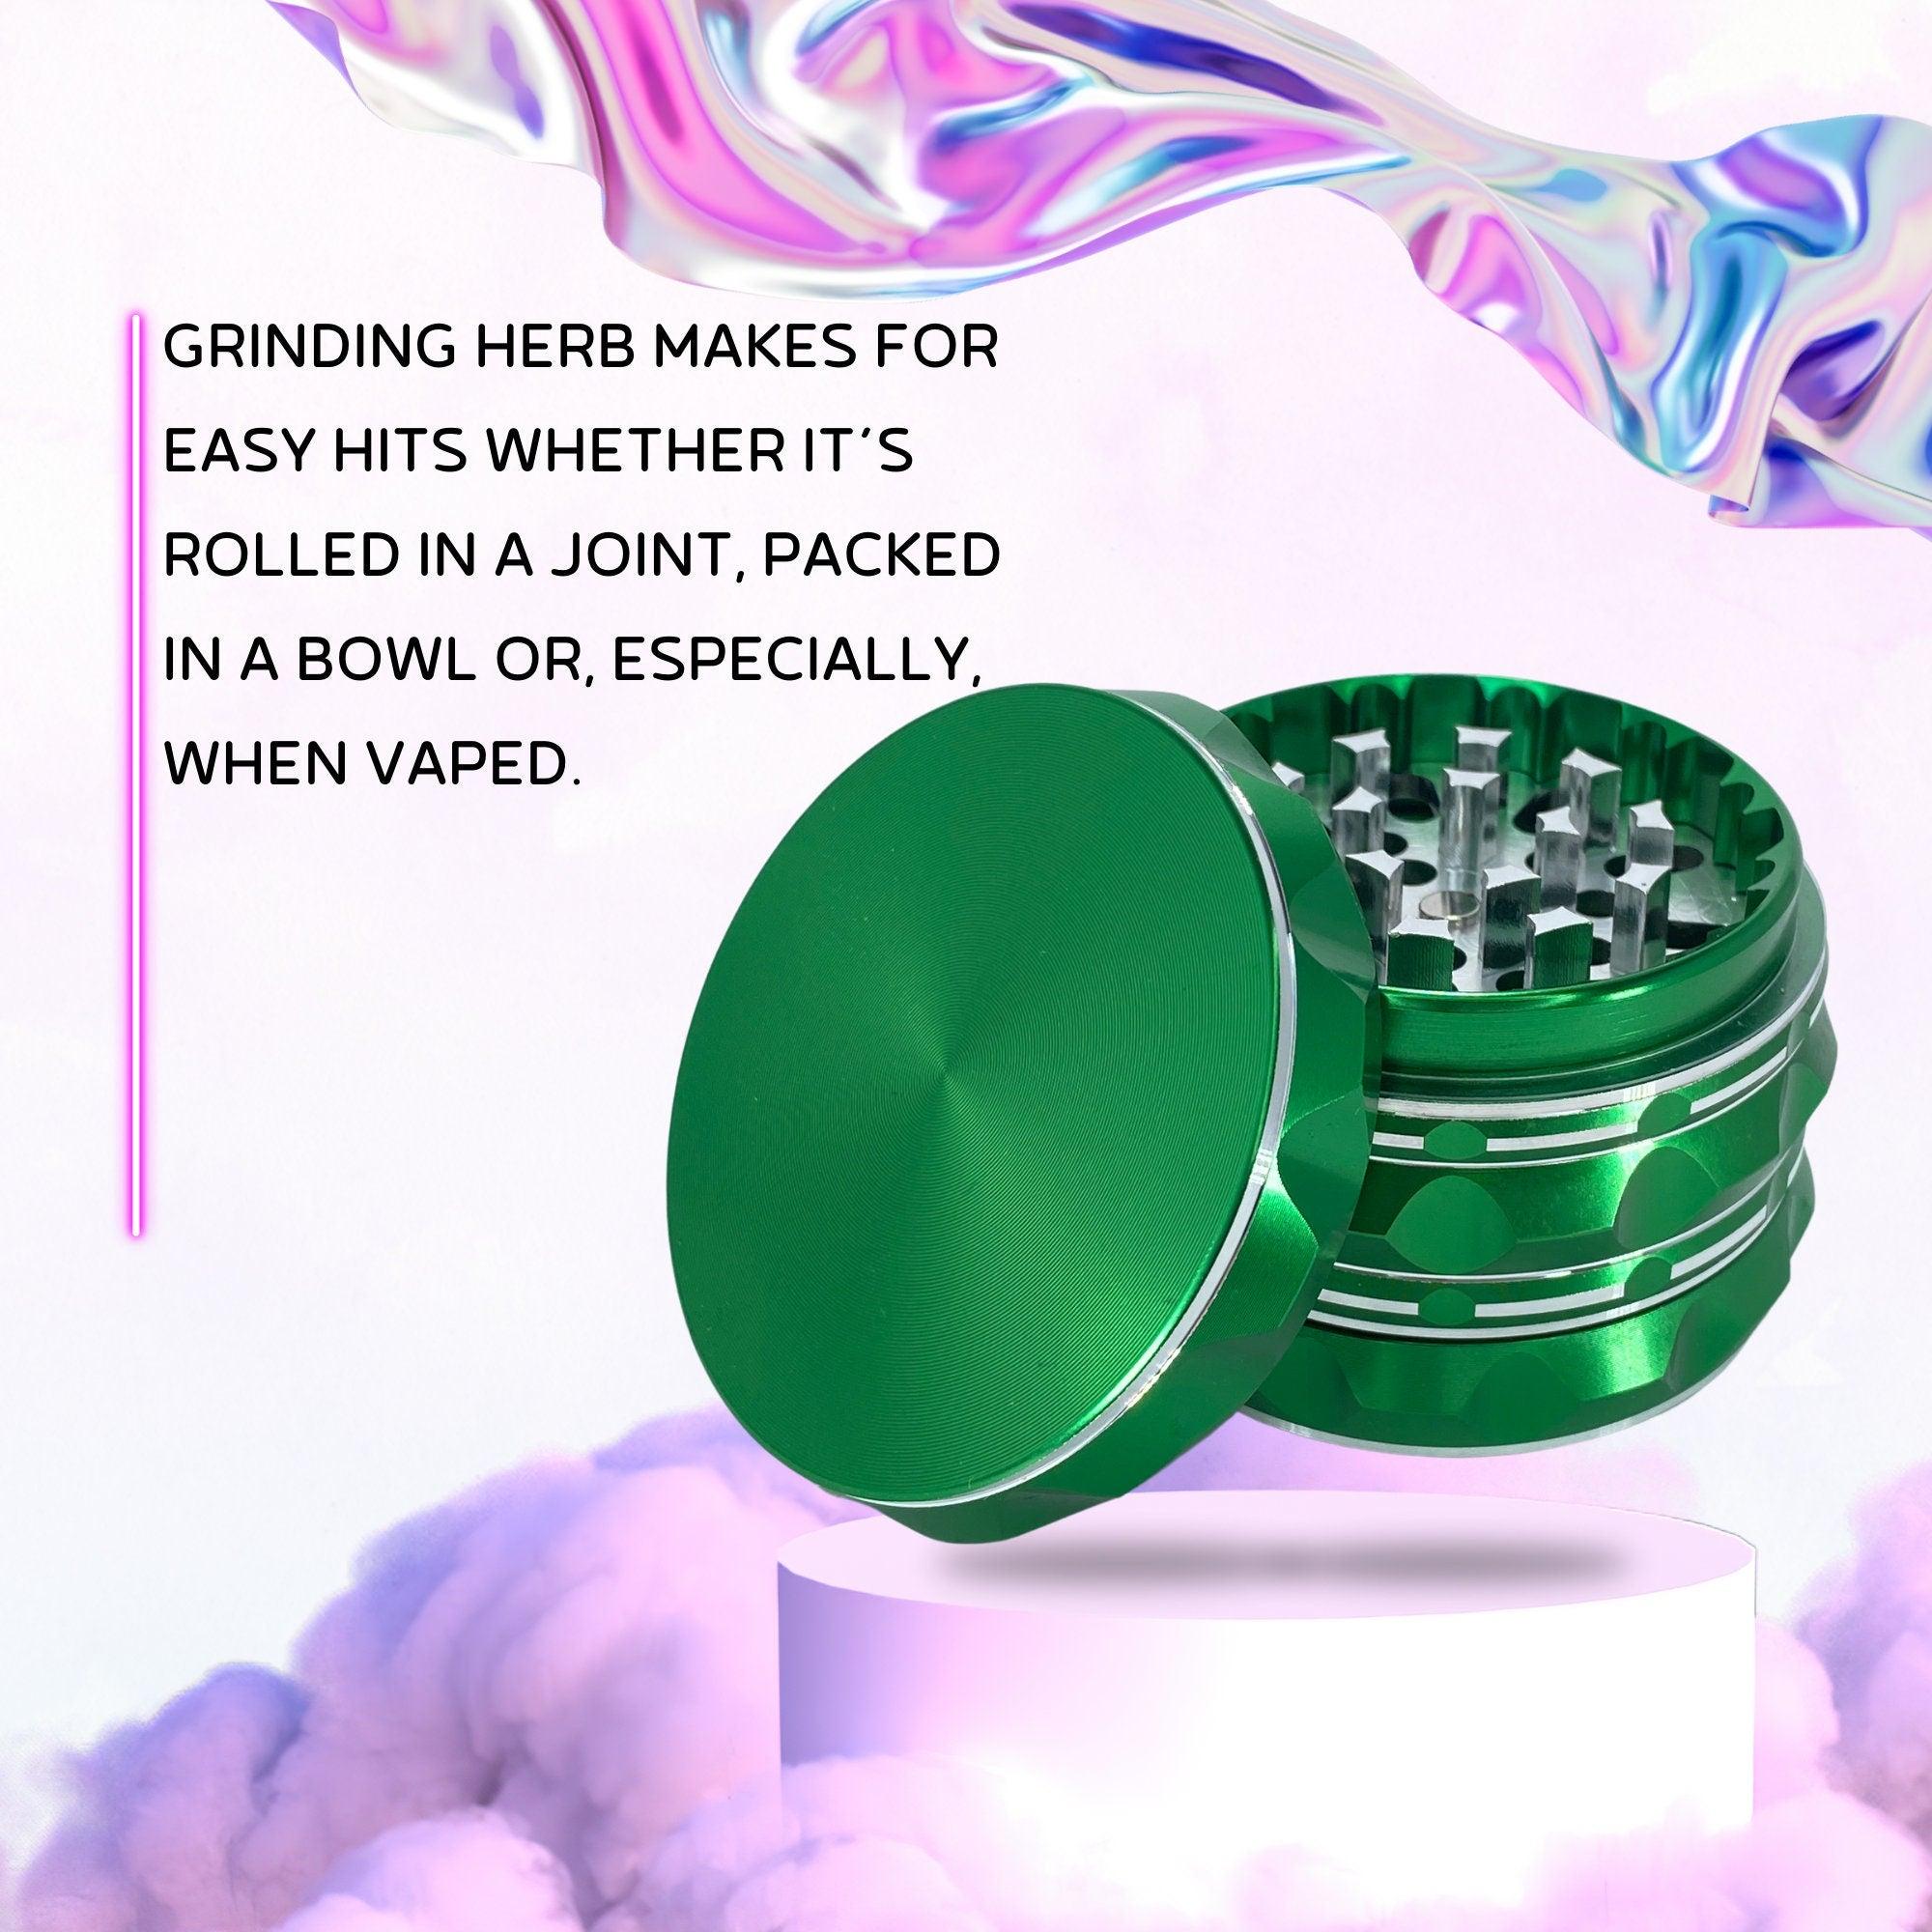 Metal Weed Grinder | Green grinder, cannabis grinders, Best friend gift, Big Herb grinder, Girly grinder, 4 pieces grinders, stoner gift